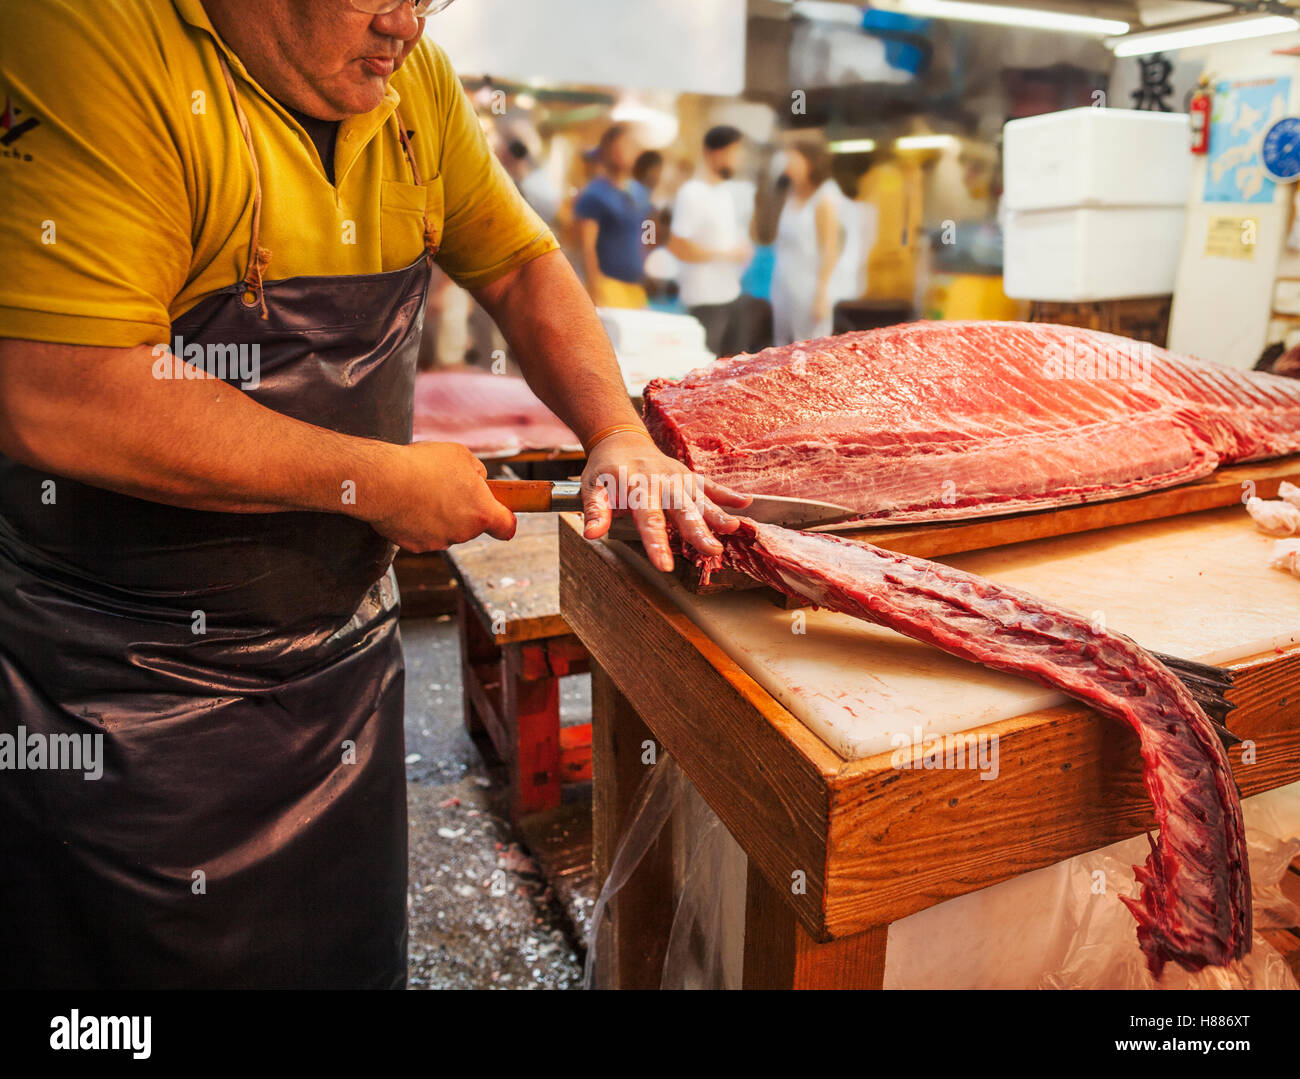 Un tradizionale mercato del pesce fresco in Tokyo. Un pescivendolo lavora la sfilettatura un grande pesce su una lastra. Persone in background. Foto Stock